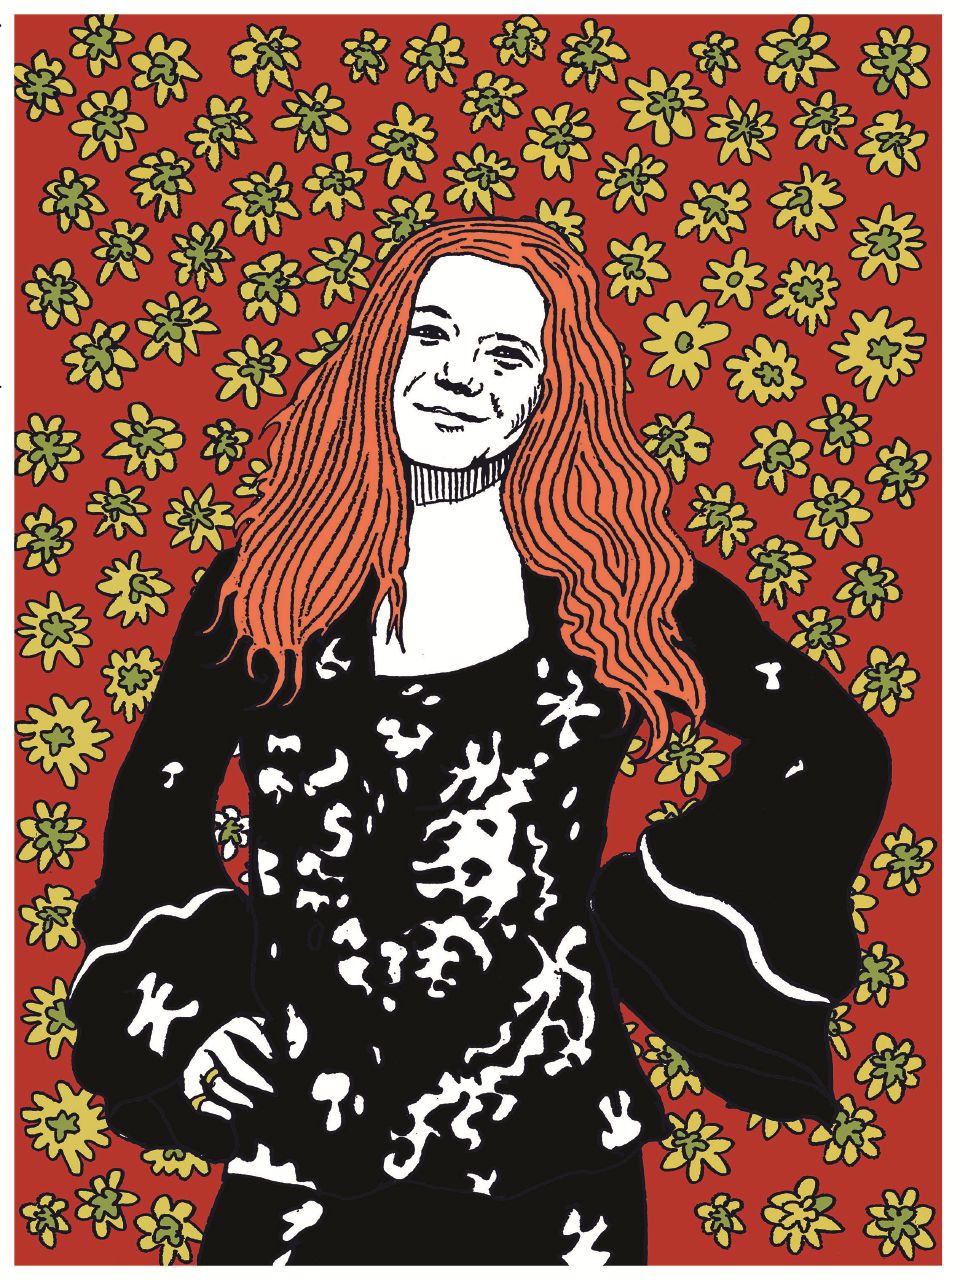 Copertina di L’anima fragile di Janis Joplin spezzata dall’eroina